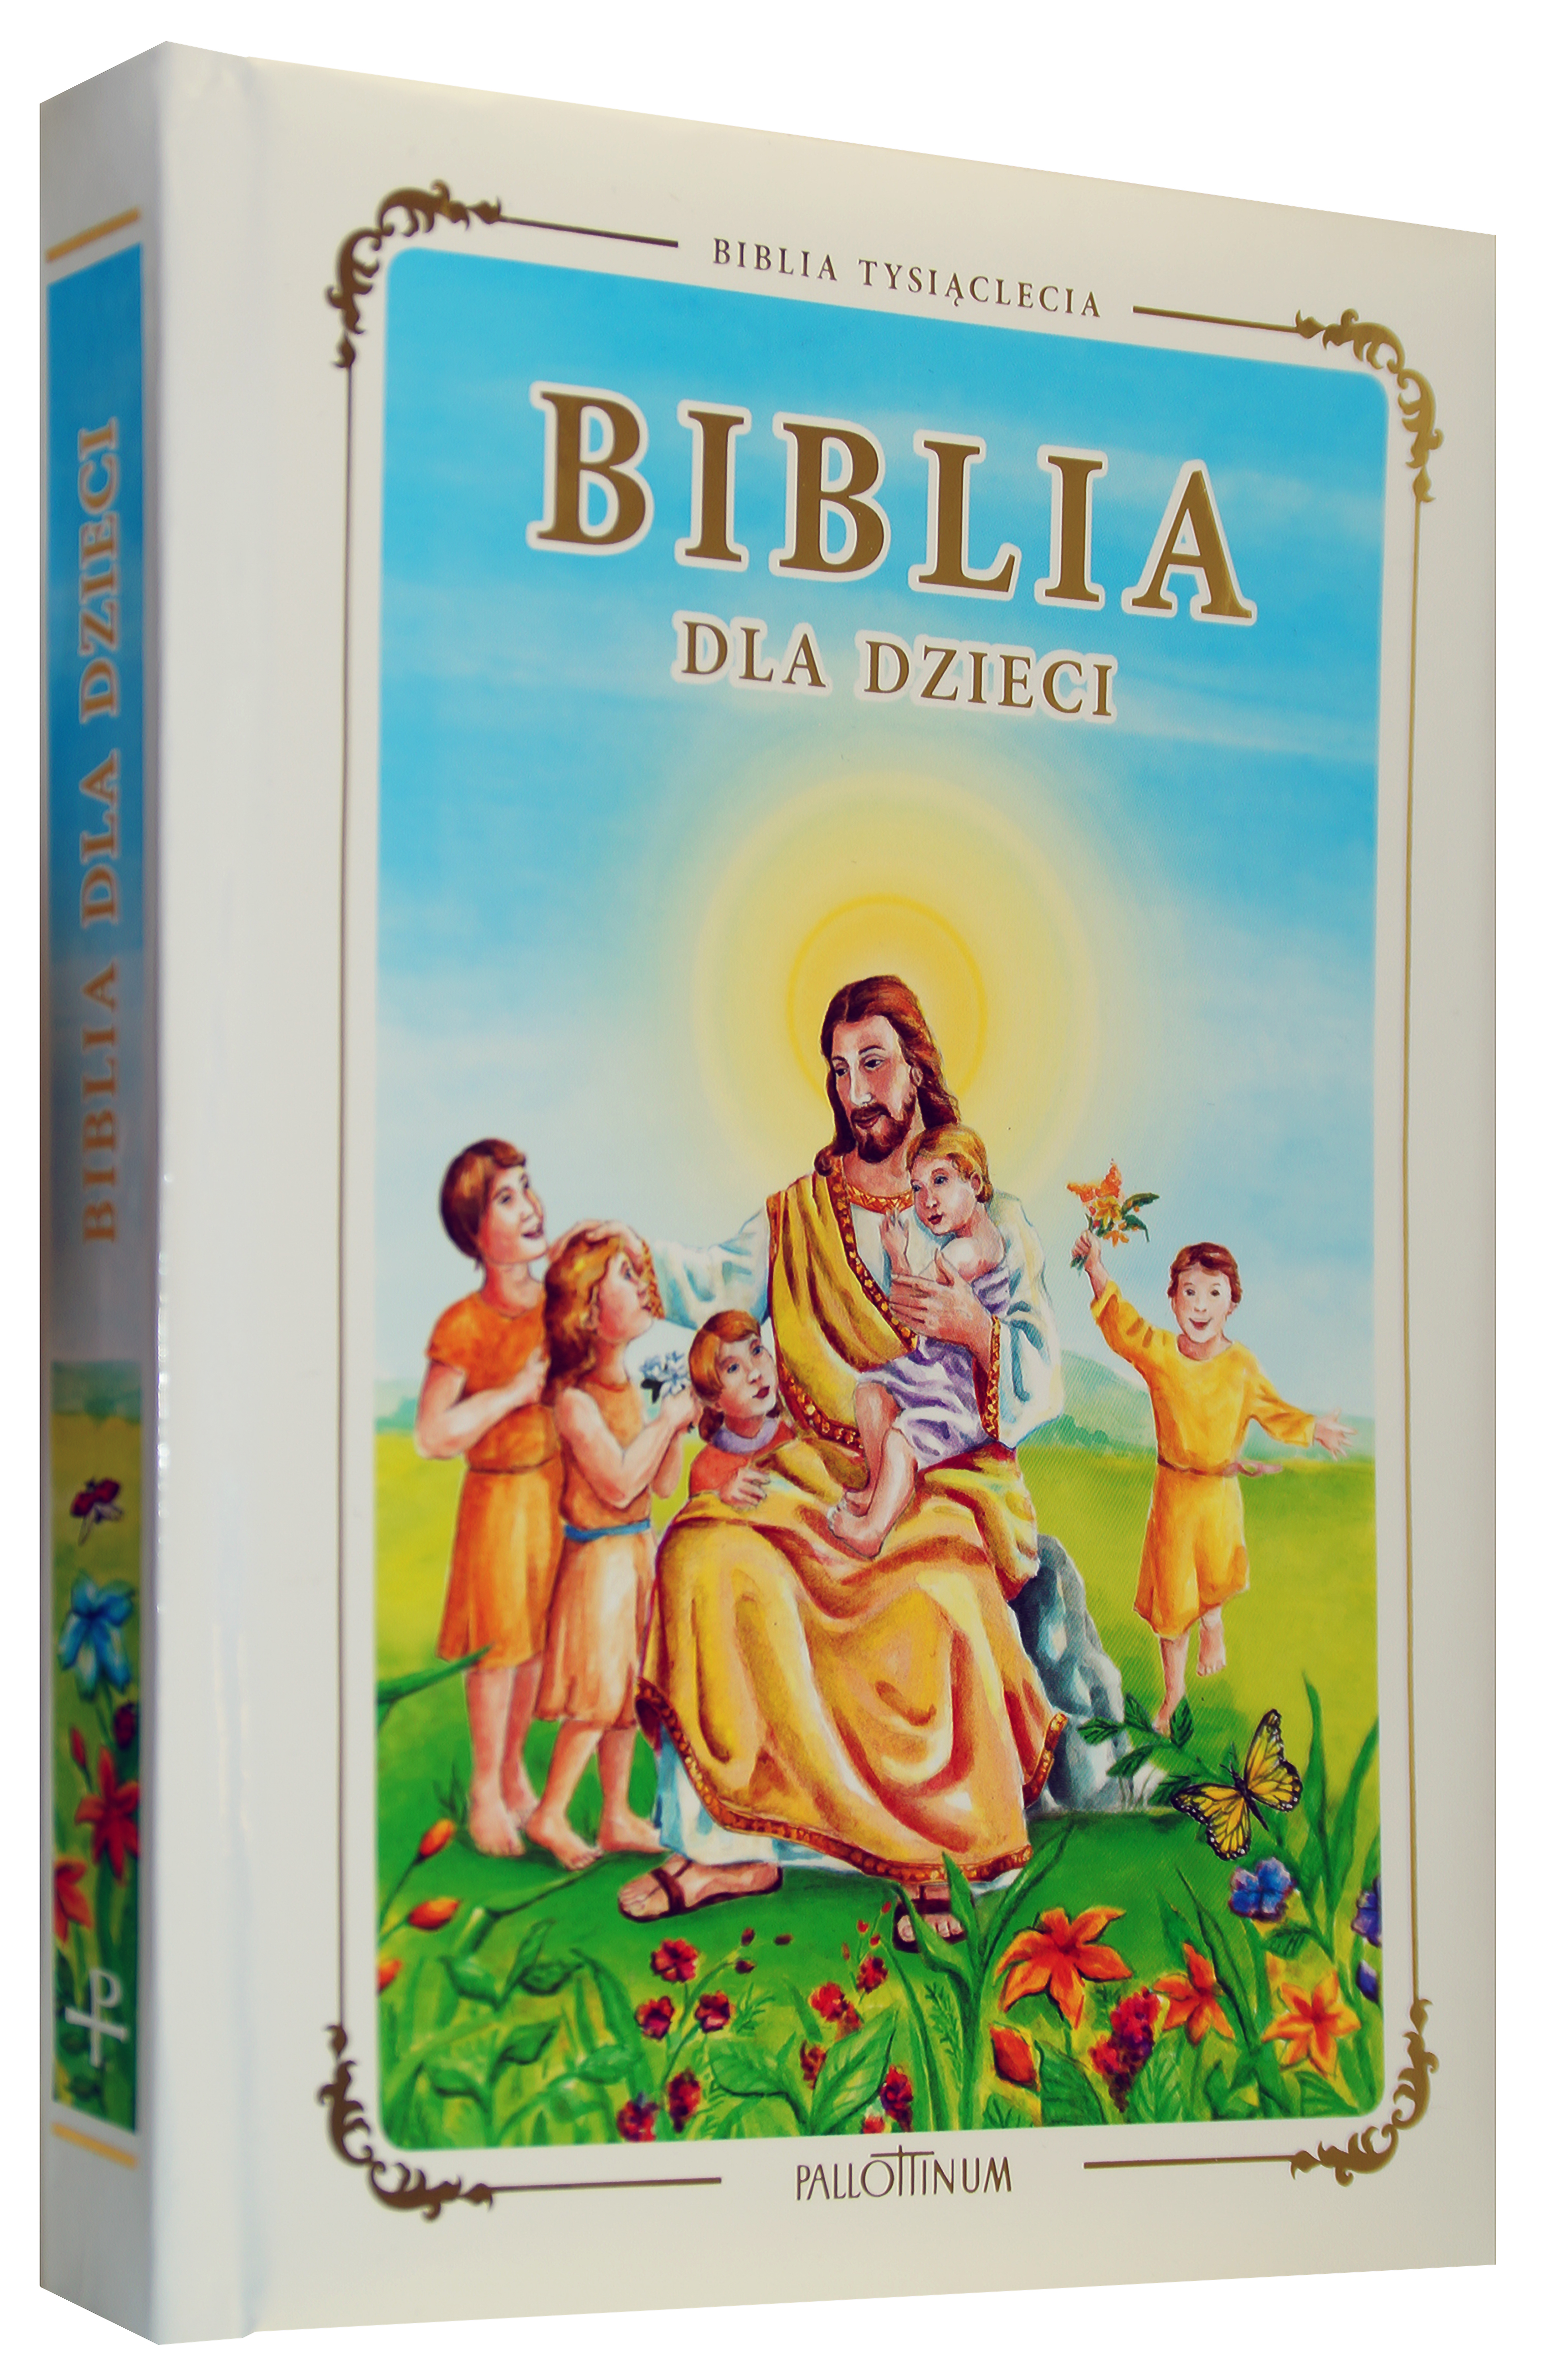 Biblia Tysiąclecia dla dzieci